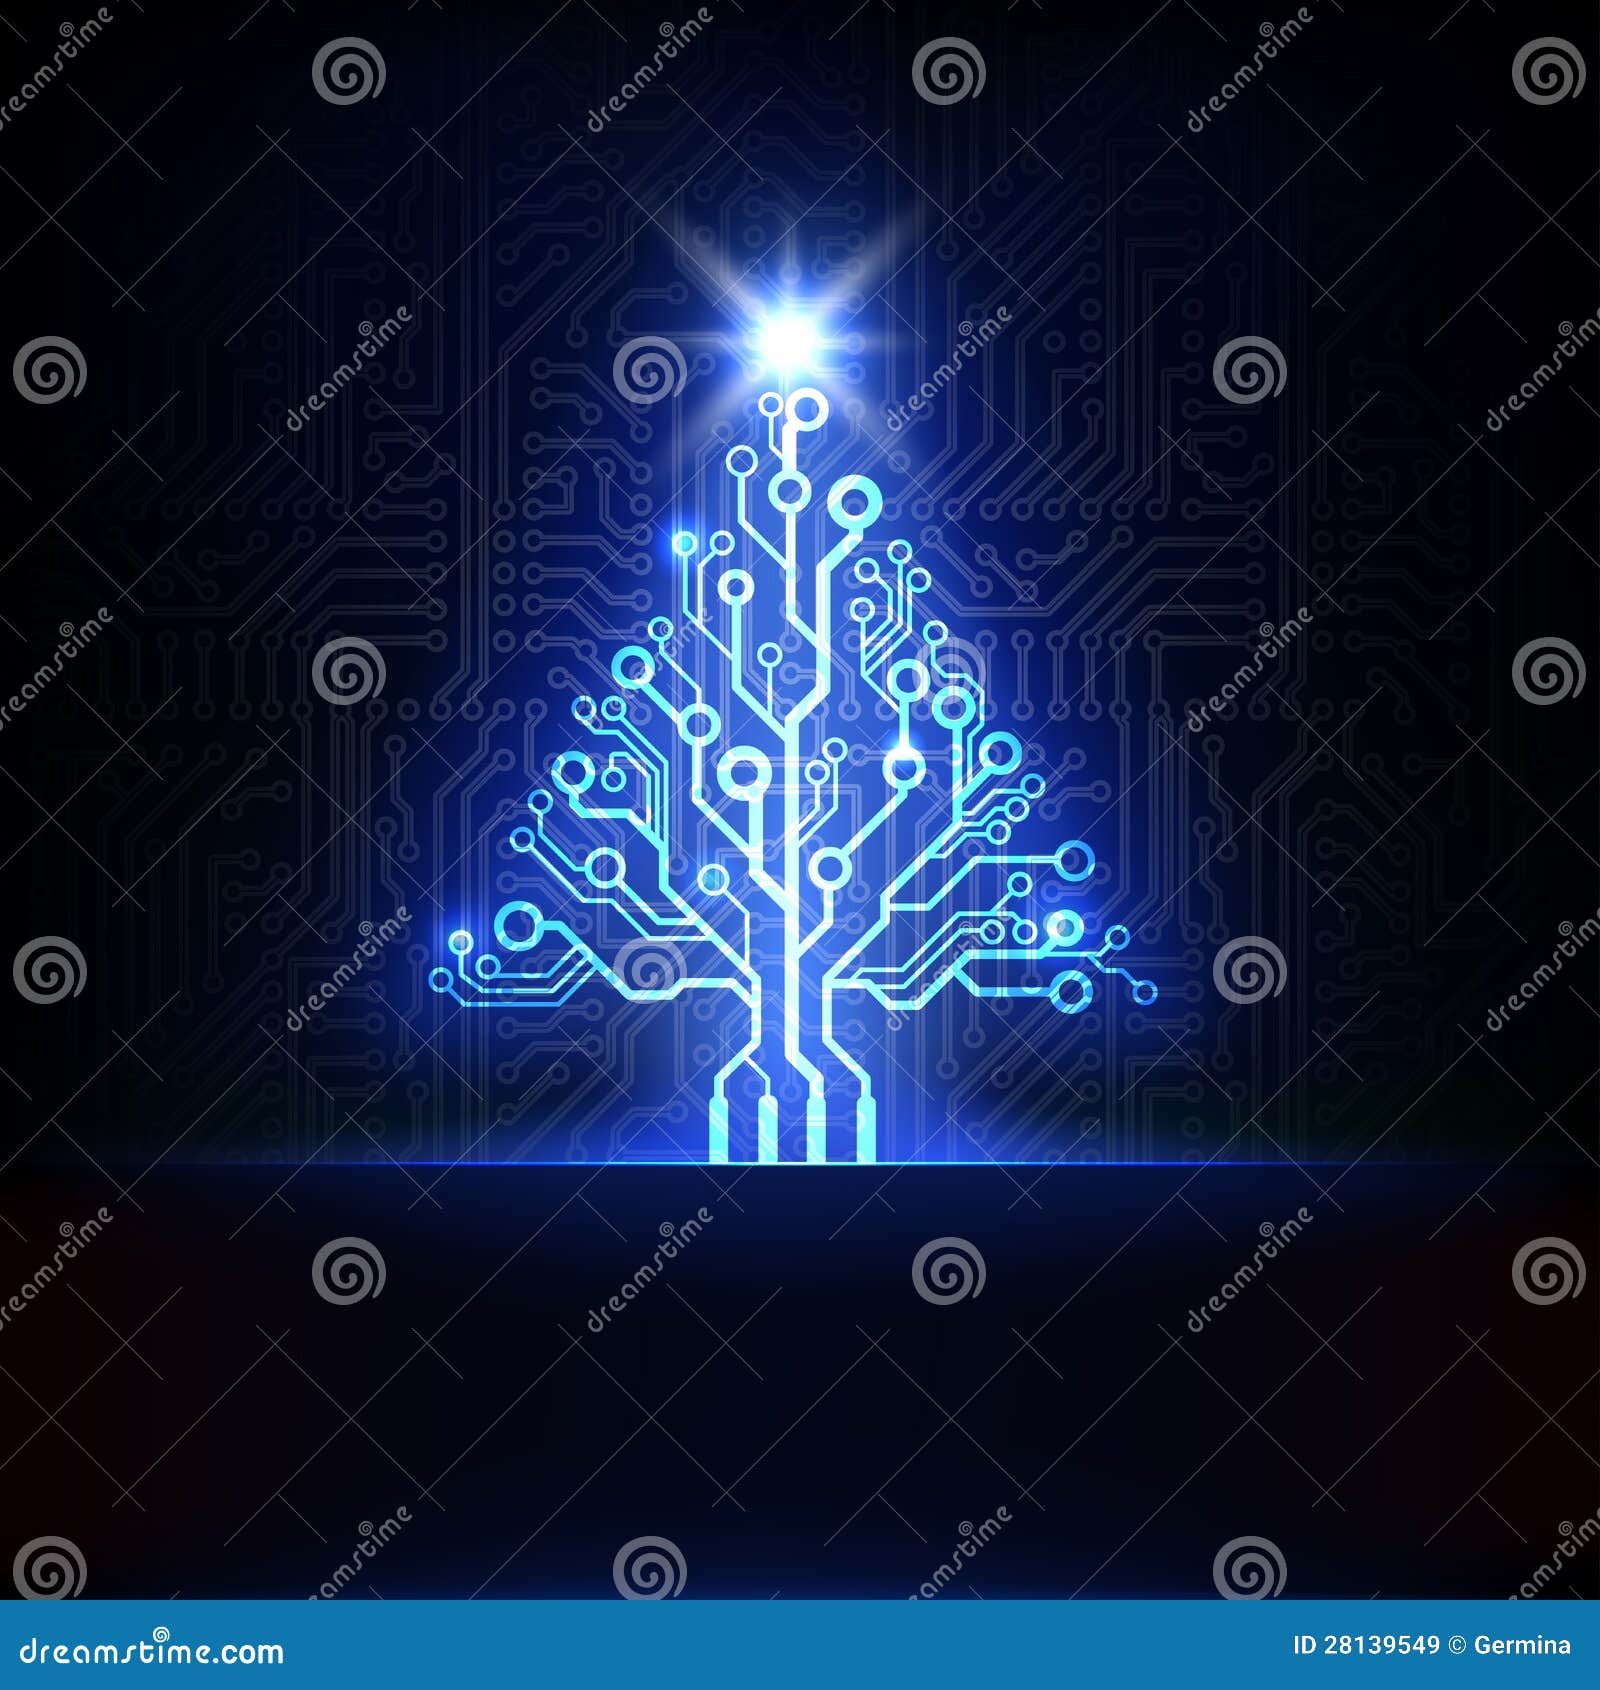 Arbre De Noël électronique De Vecteur Images libres de ...